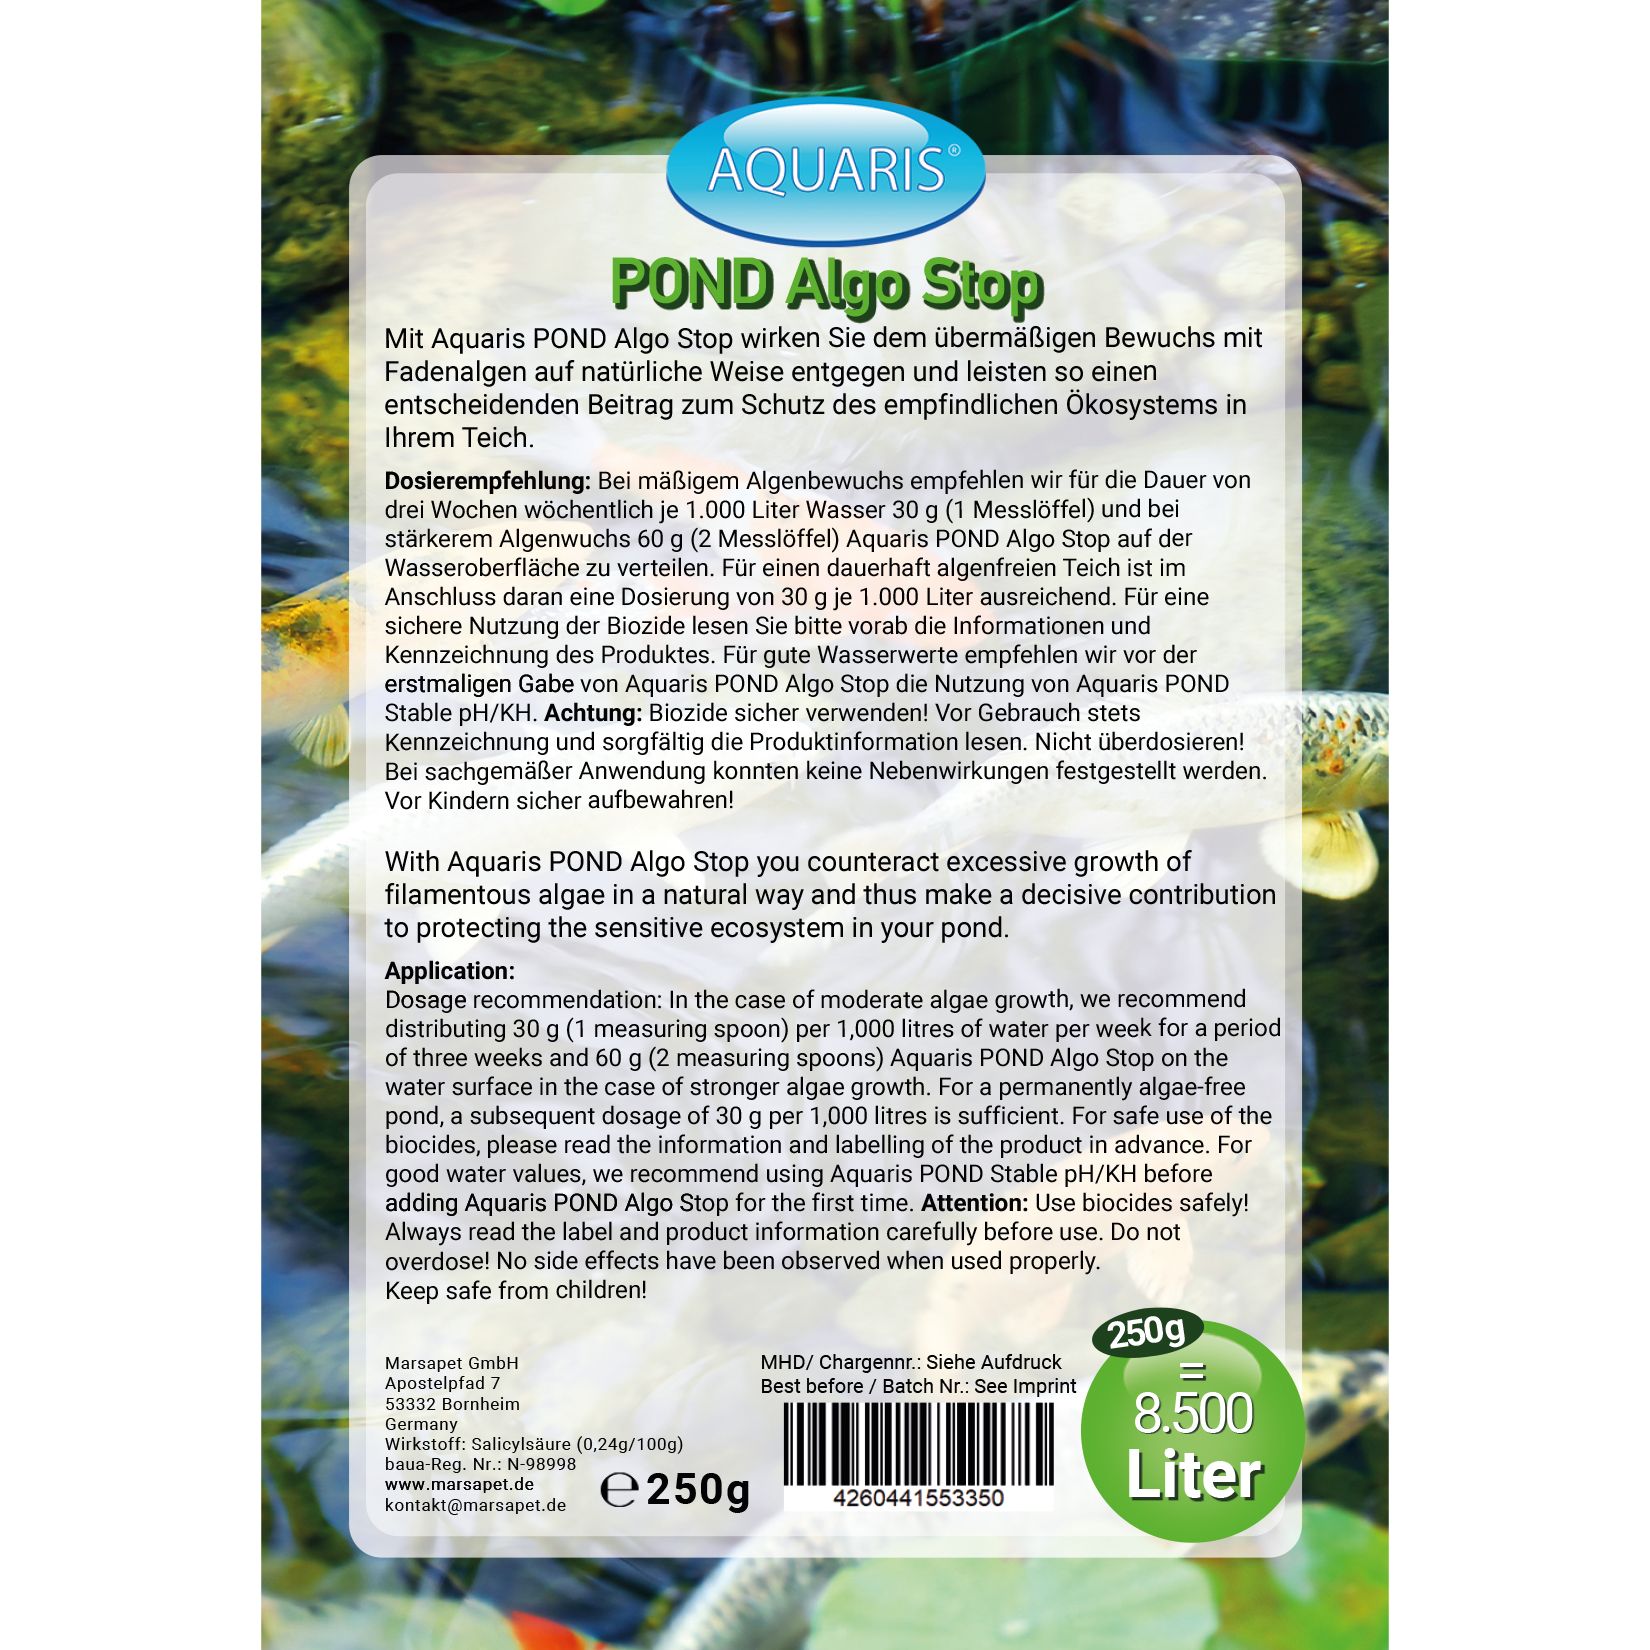 AQUARIS Teichpflege-Produkte für Teichfische - POND Algo Stop